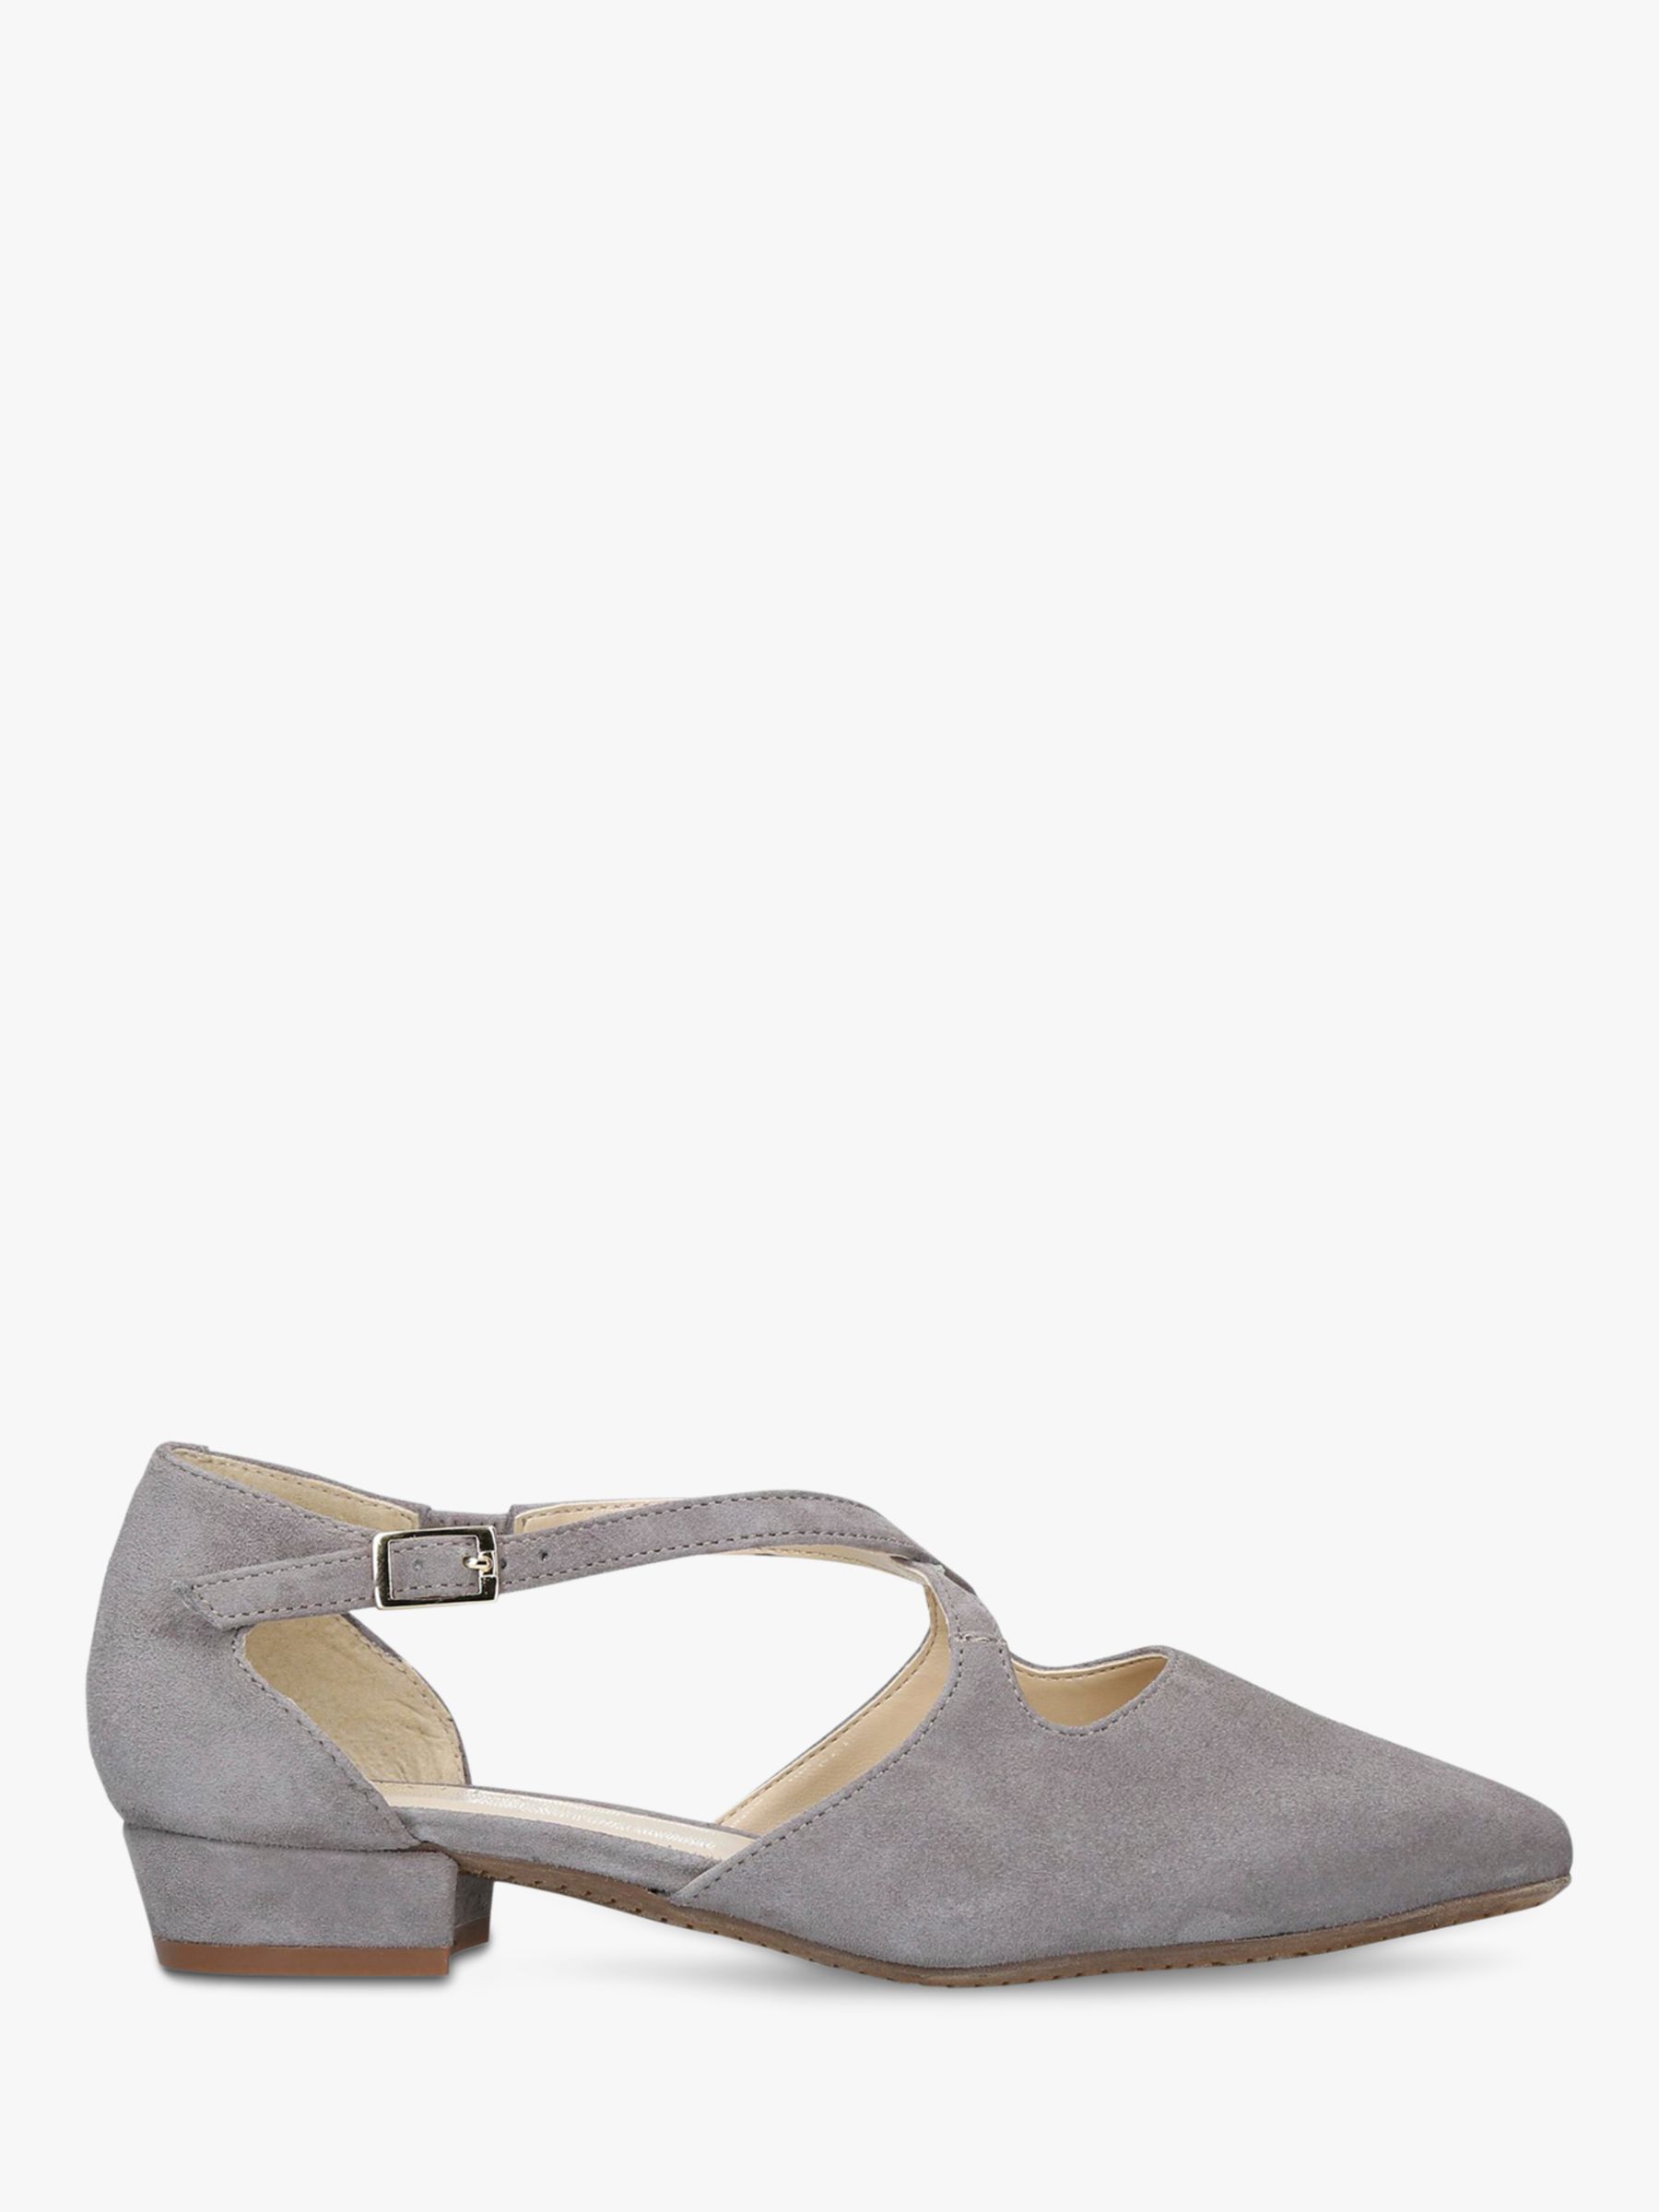 carvela comfort heels